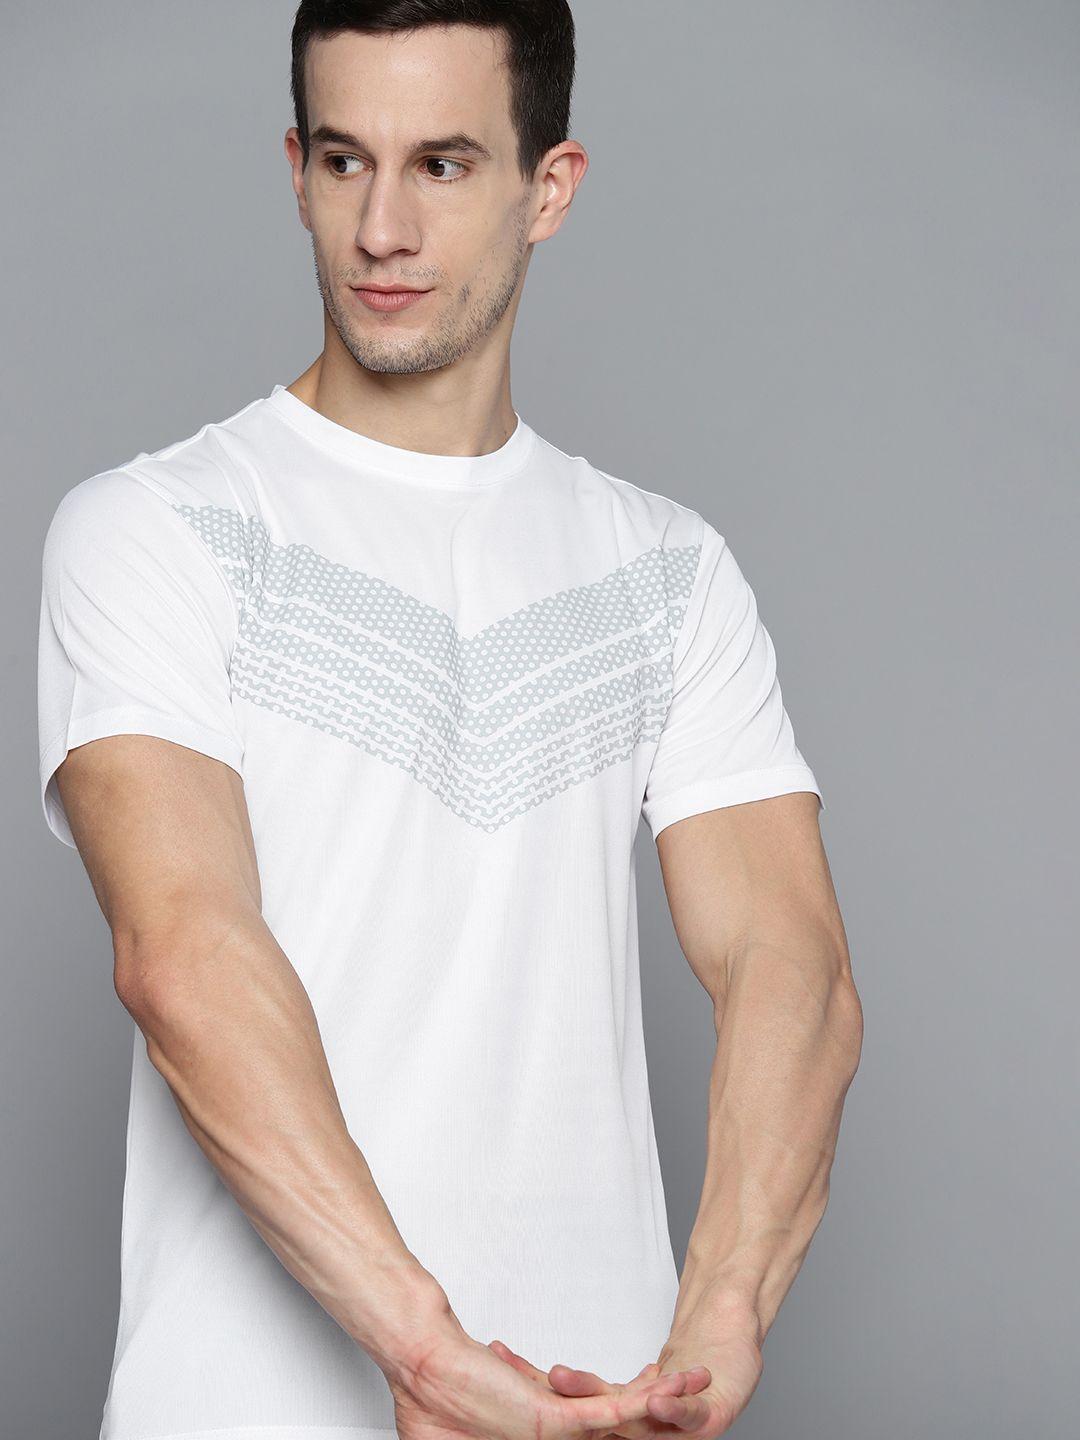 hrx-by-hrithik-roshan-training-men-optic-white-rapid-dry-solid-tshirts